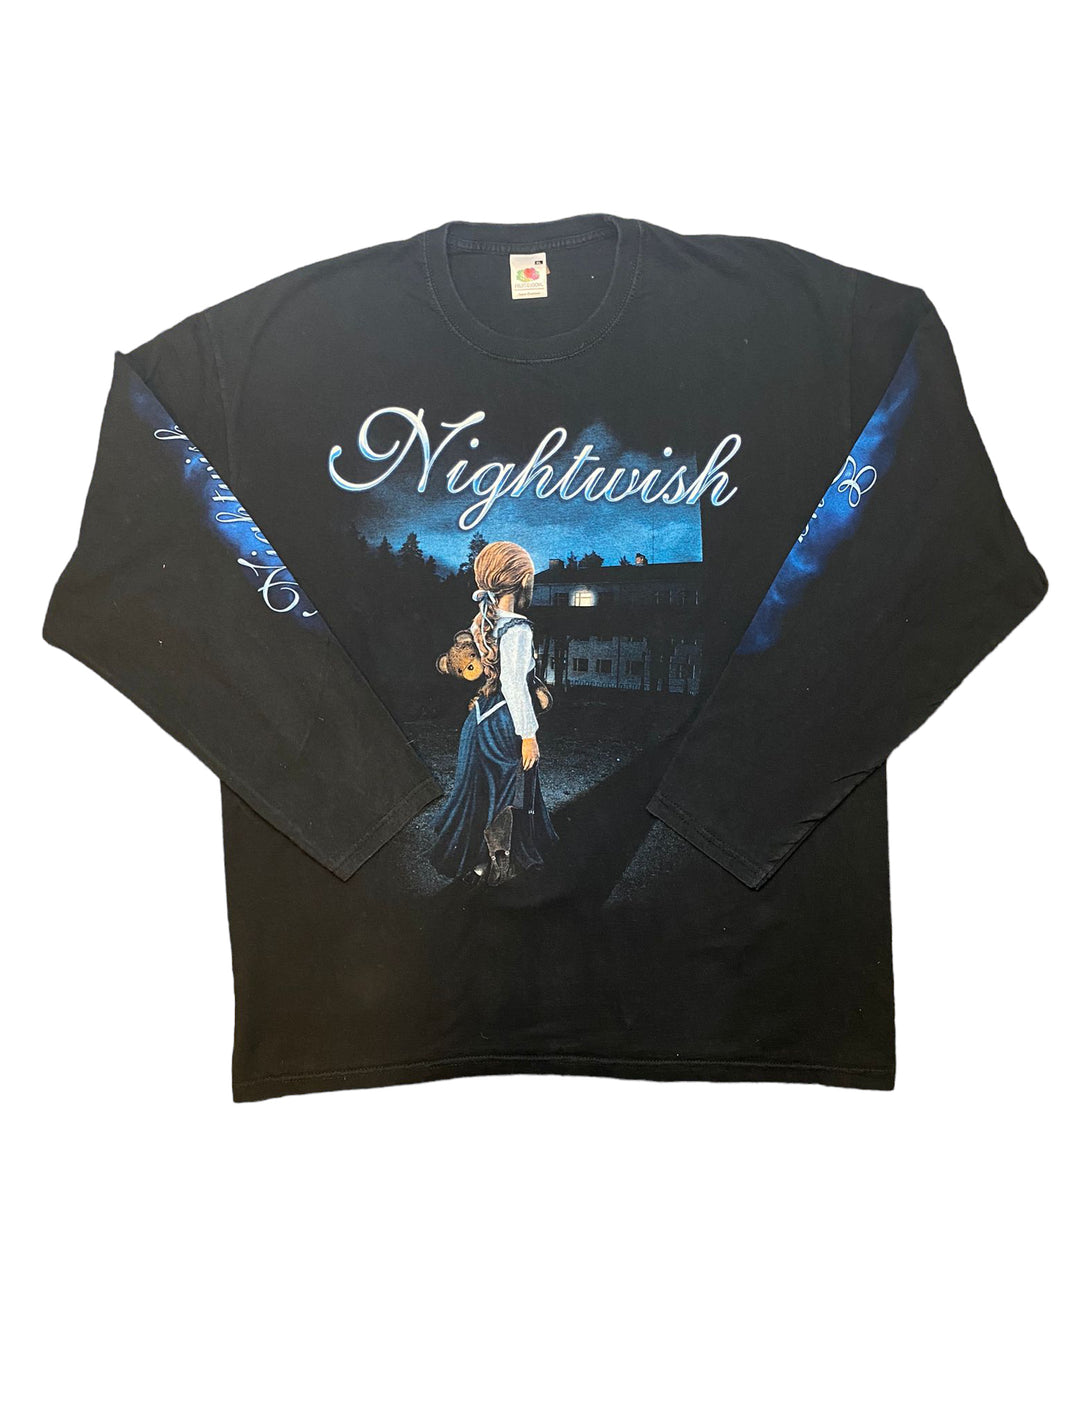 Nightwish Sweatshirt Bandshirt